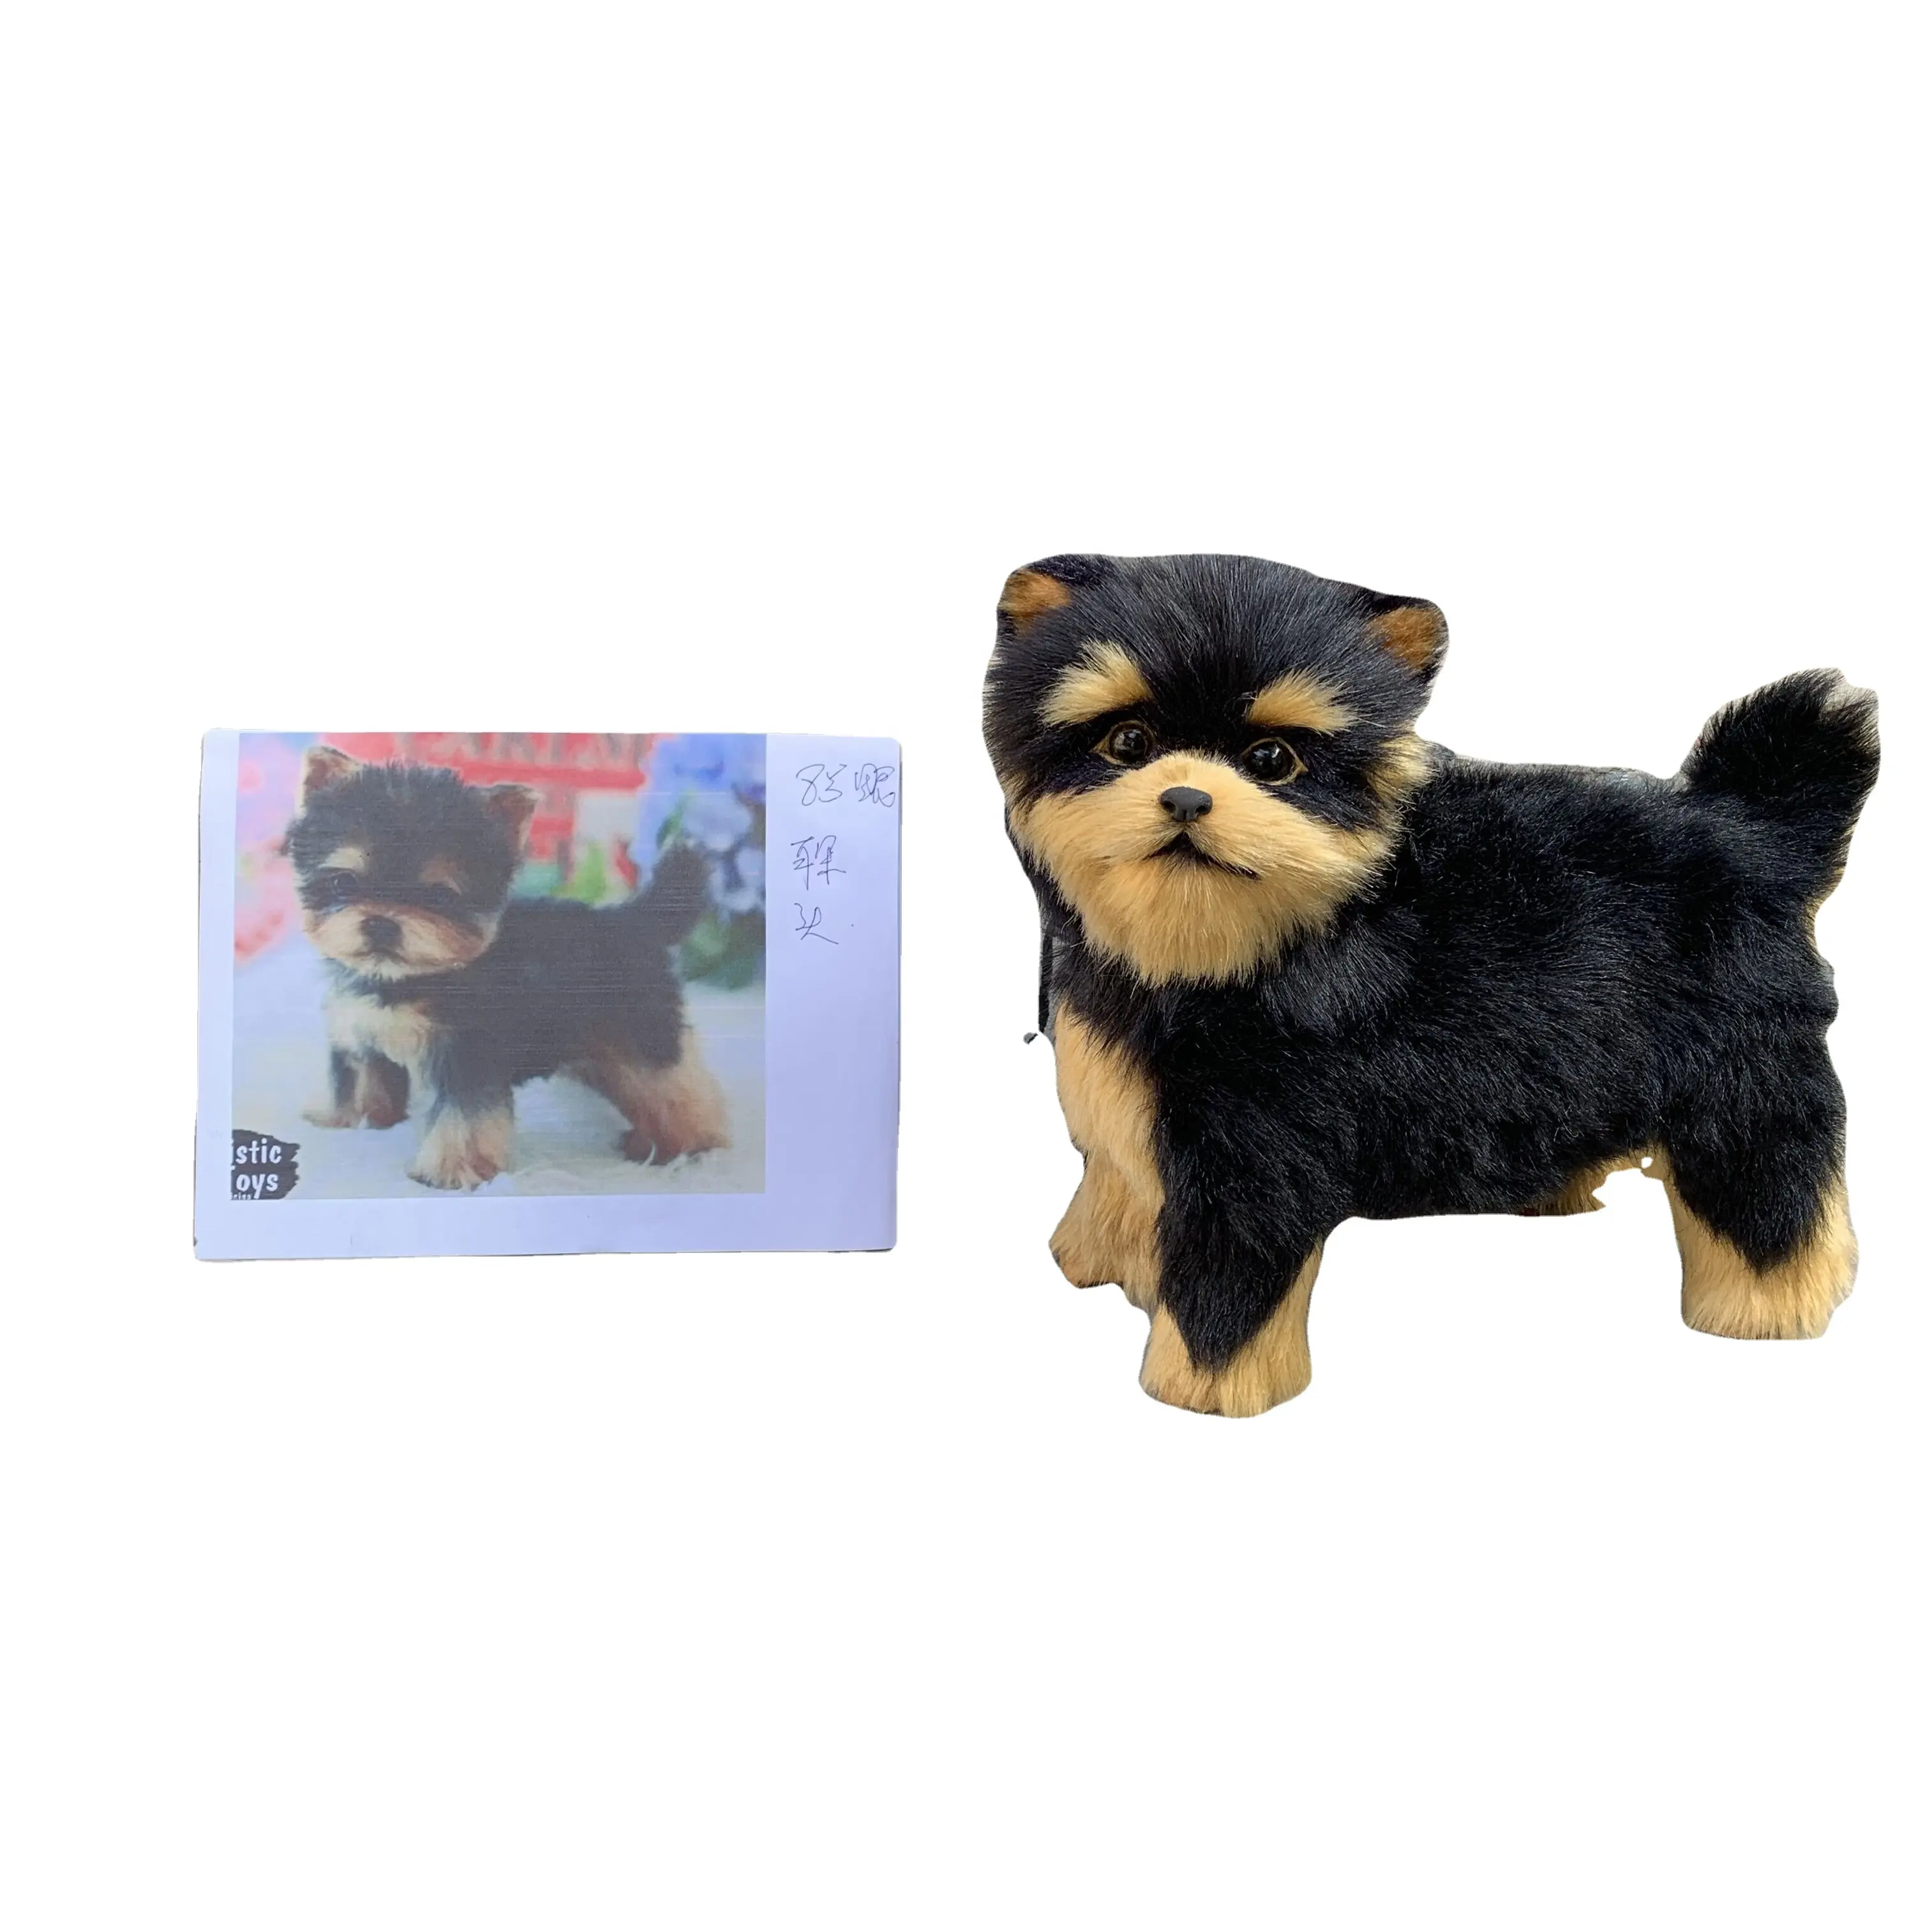 Perro de juguete de felpa de plástico para niños, juguete realista de Navidad hecho a mano, modelo de animal artesanal, regalos, productos artesanales para niños